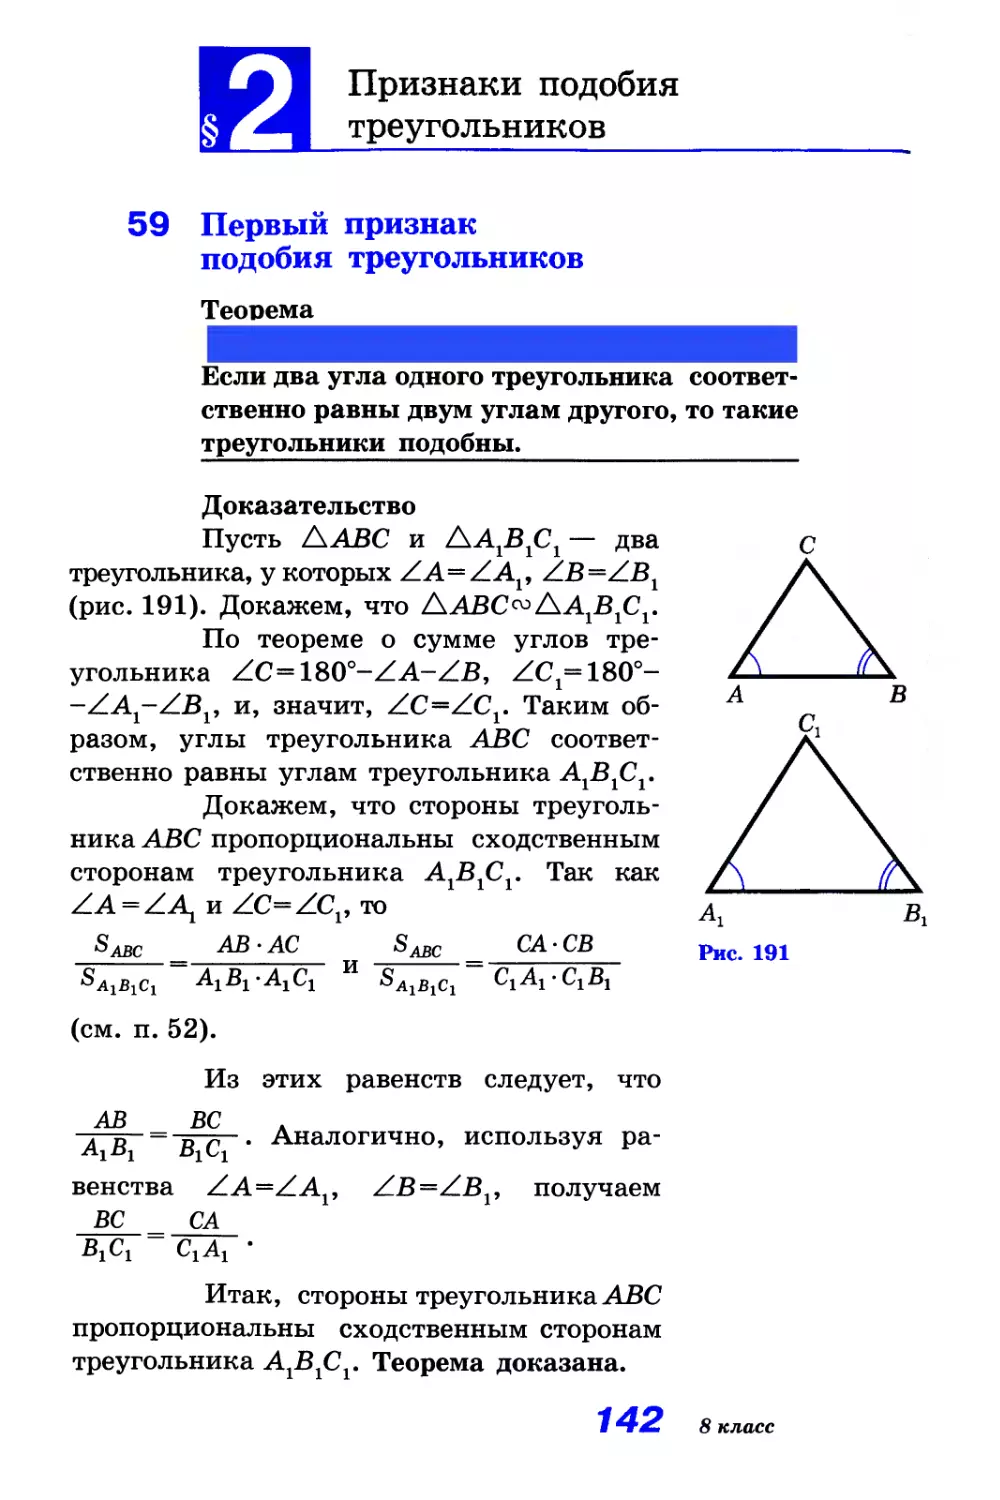 § 2. Признаки подобия треугольников